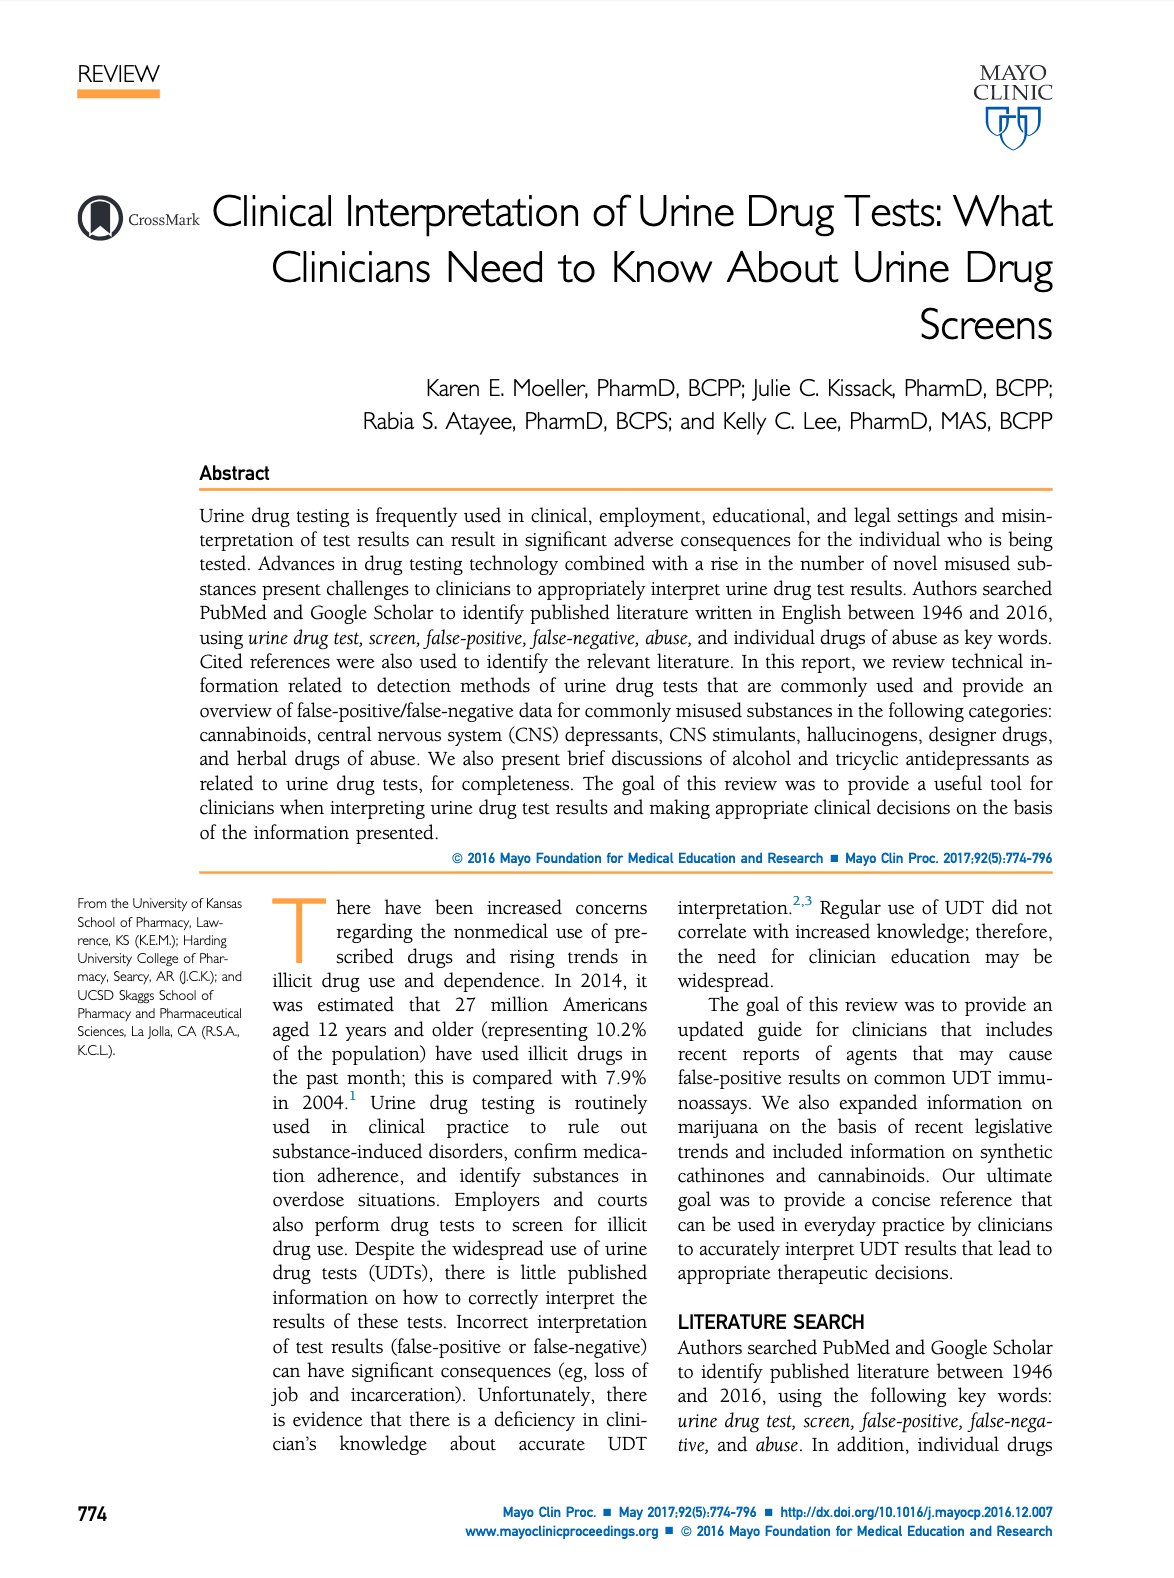 Download Clinical Interpretation of Urine Drug Tests in PDF format.